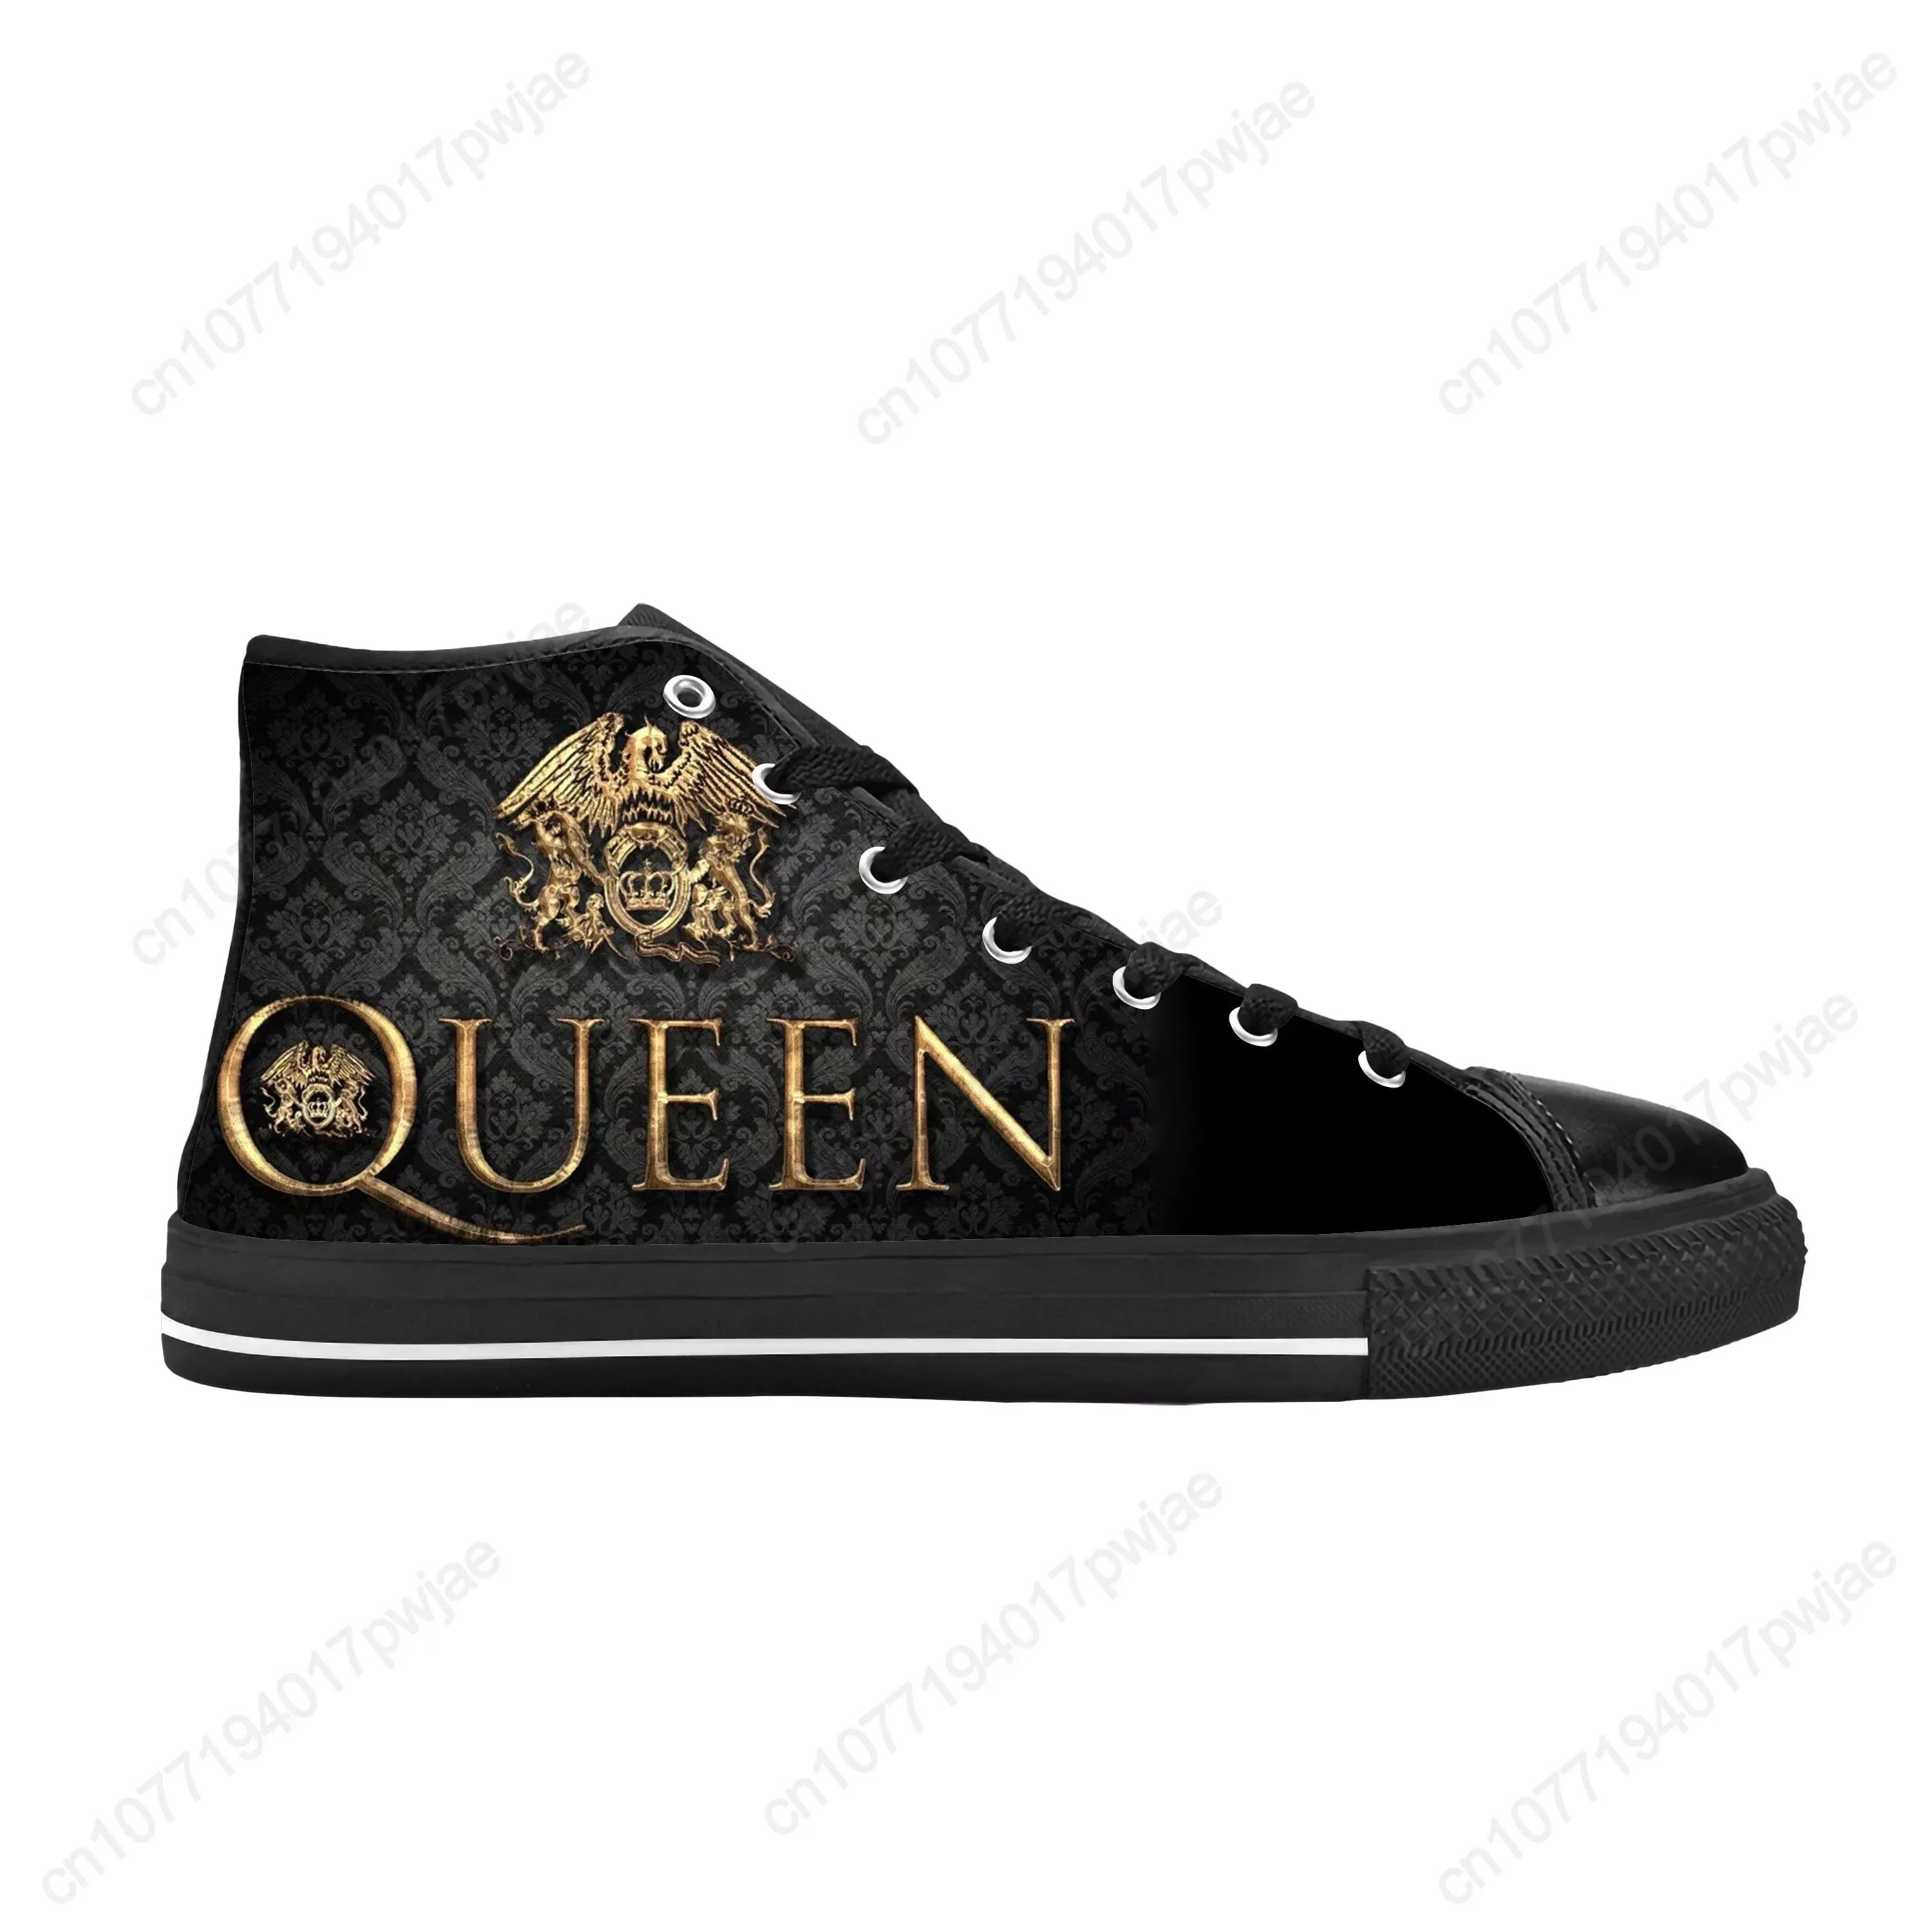 Color:Queen17Shoe Size:4.5